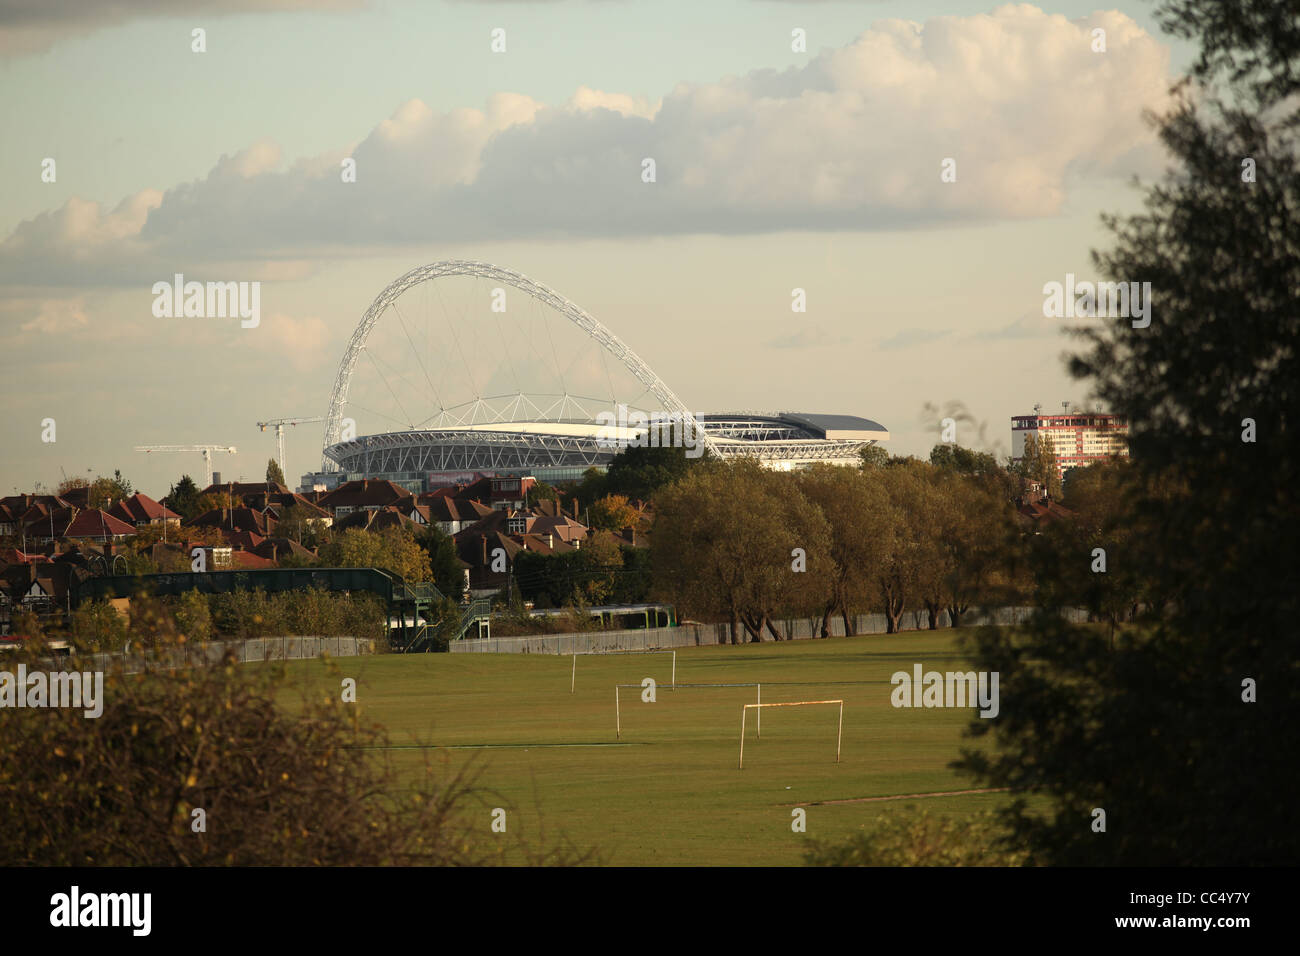 Une vue sur le stade de Wembley avec terrains de foot en premier plan Banque D'Images